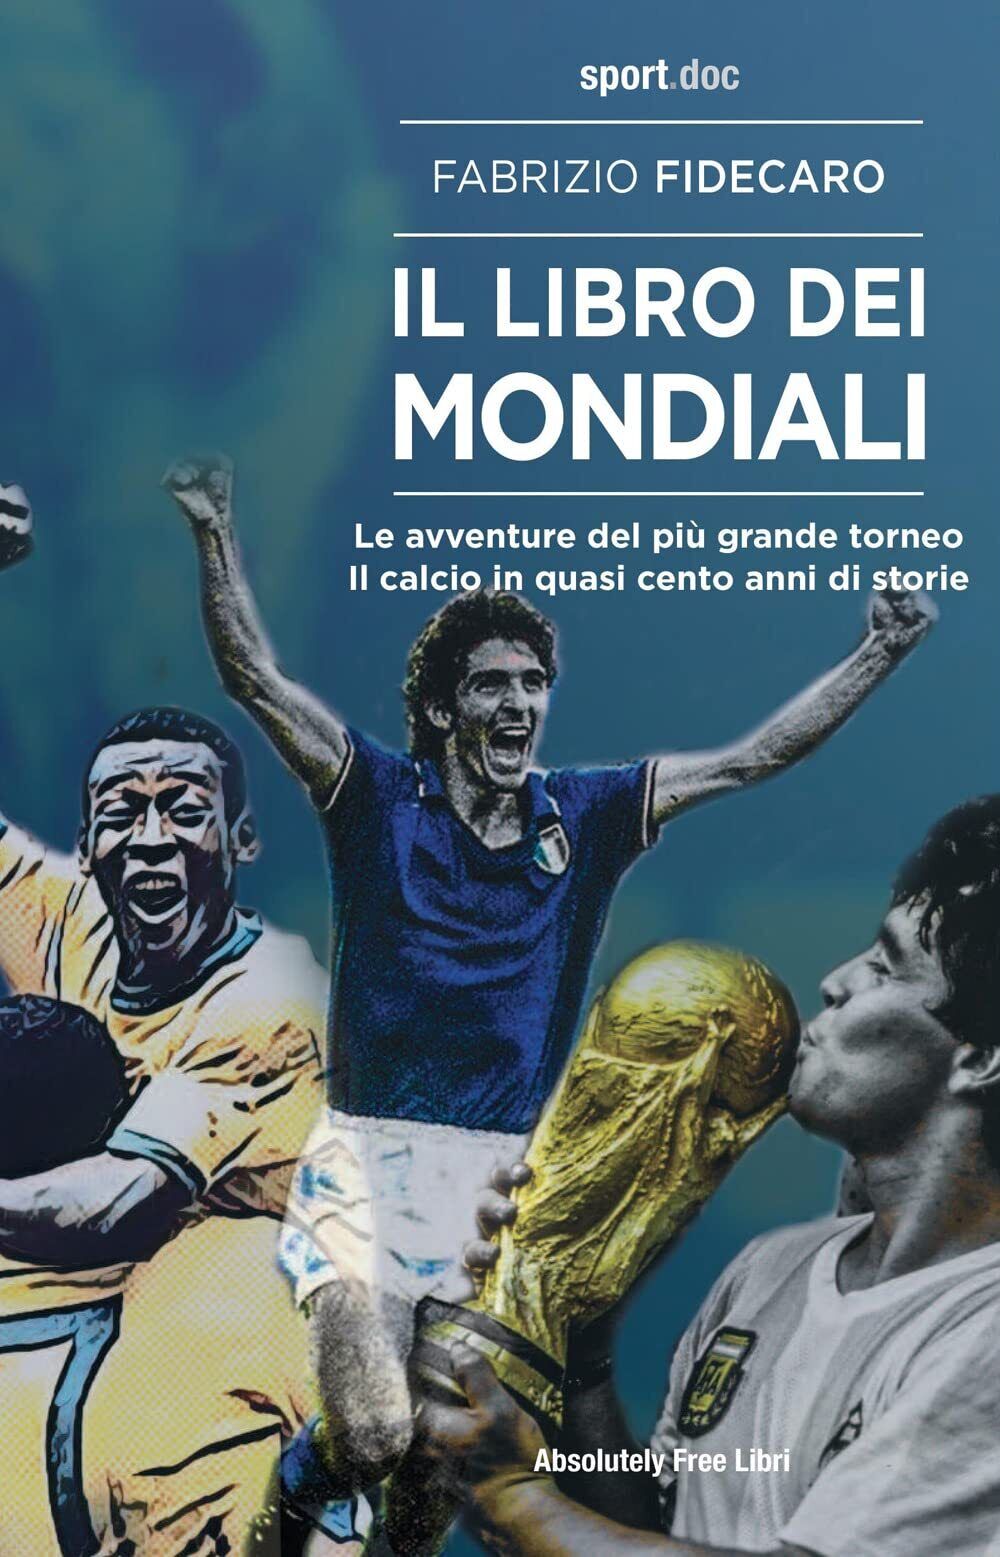 Il libro dei Mondiali - Fabrizio Fidecaro - Absolutely Free, 2022